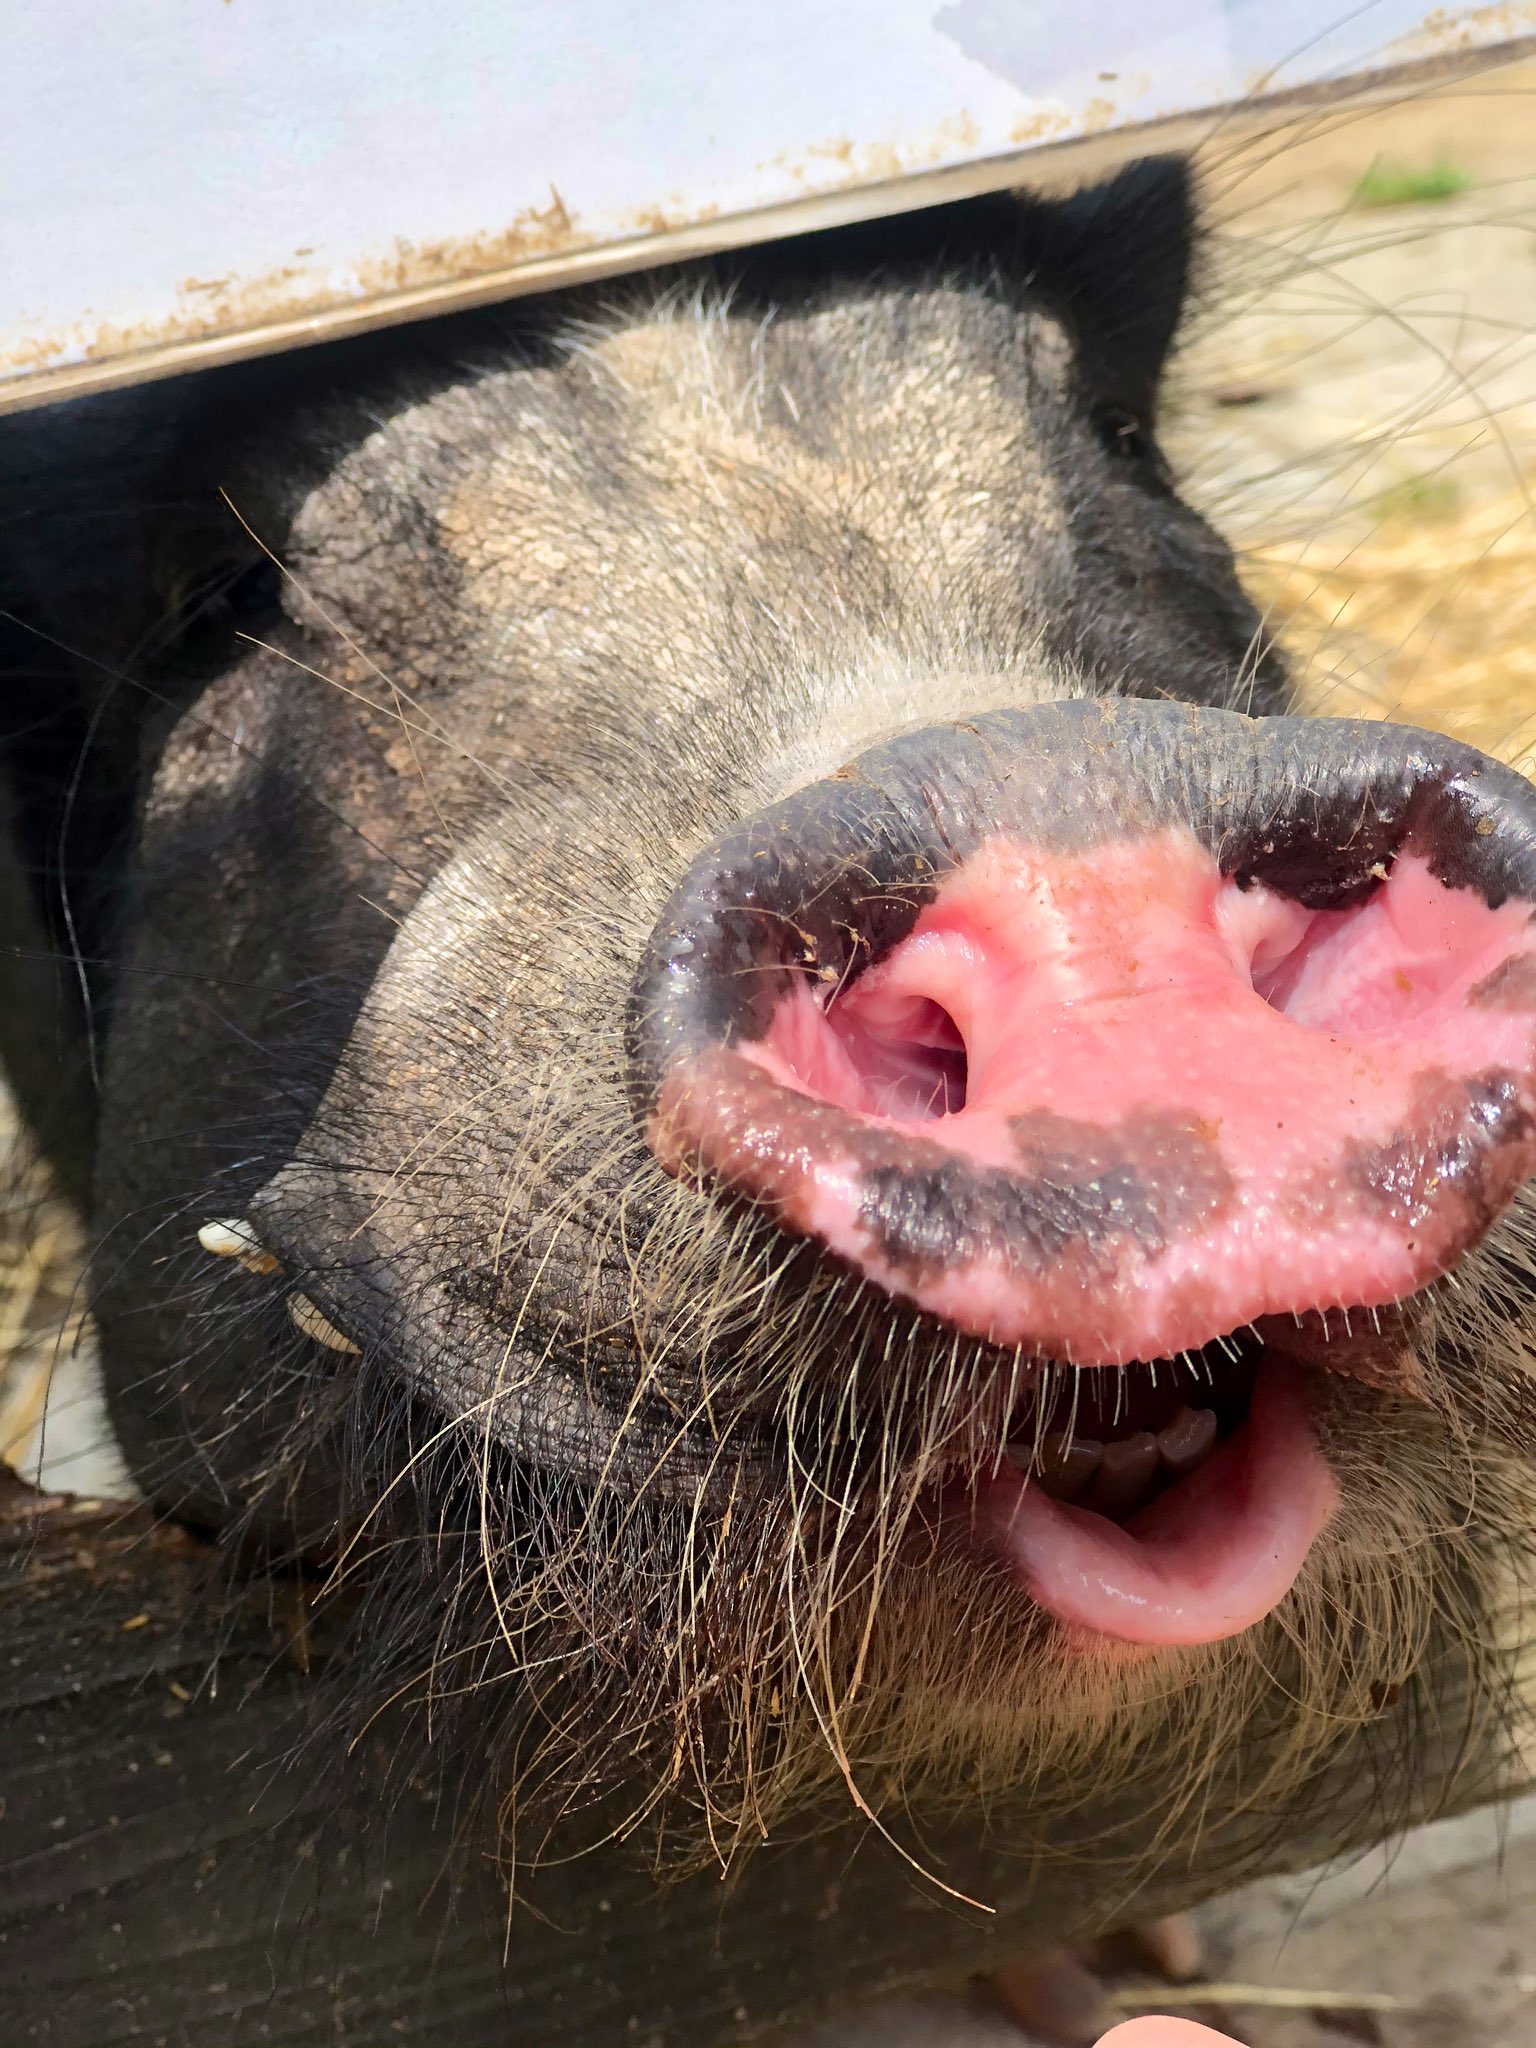 中川真桜 夏の思い出 可愛い豚を見ました 唇の感じがたまらないですね 豚が得意でない方はごめんなさい 私好みのいい感じの巻き具合で 自撮りをしてみました T Co N6d1xuqhys Twitter